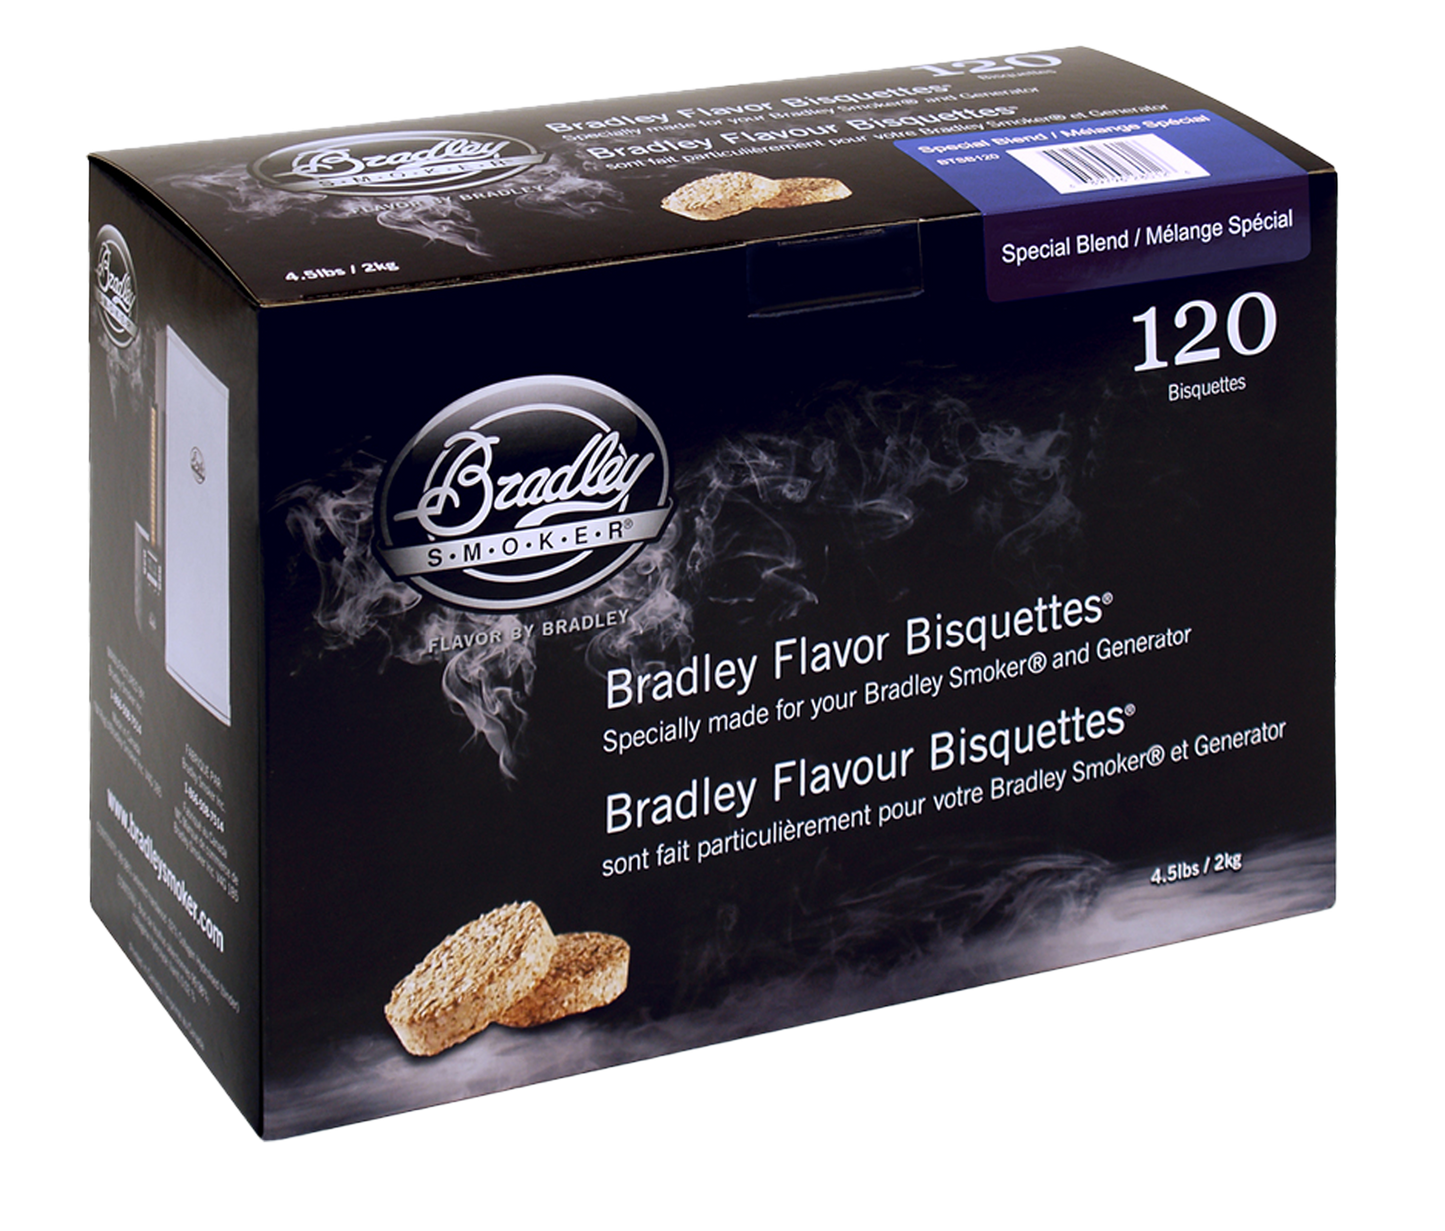 Speciale mixbisquetten voor Bradley-rokers